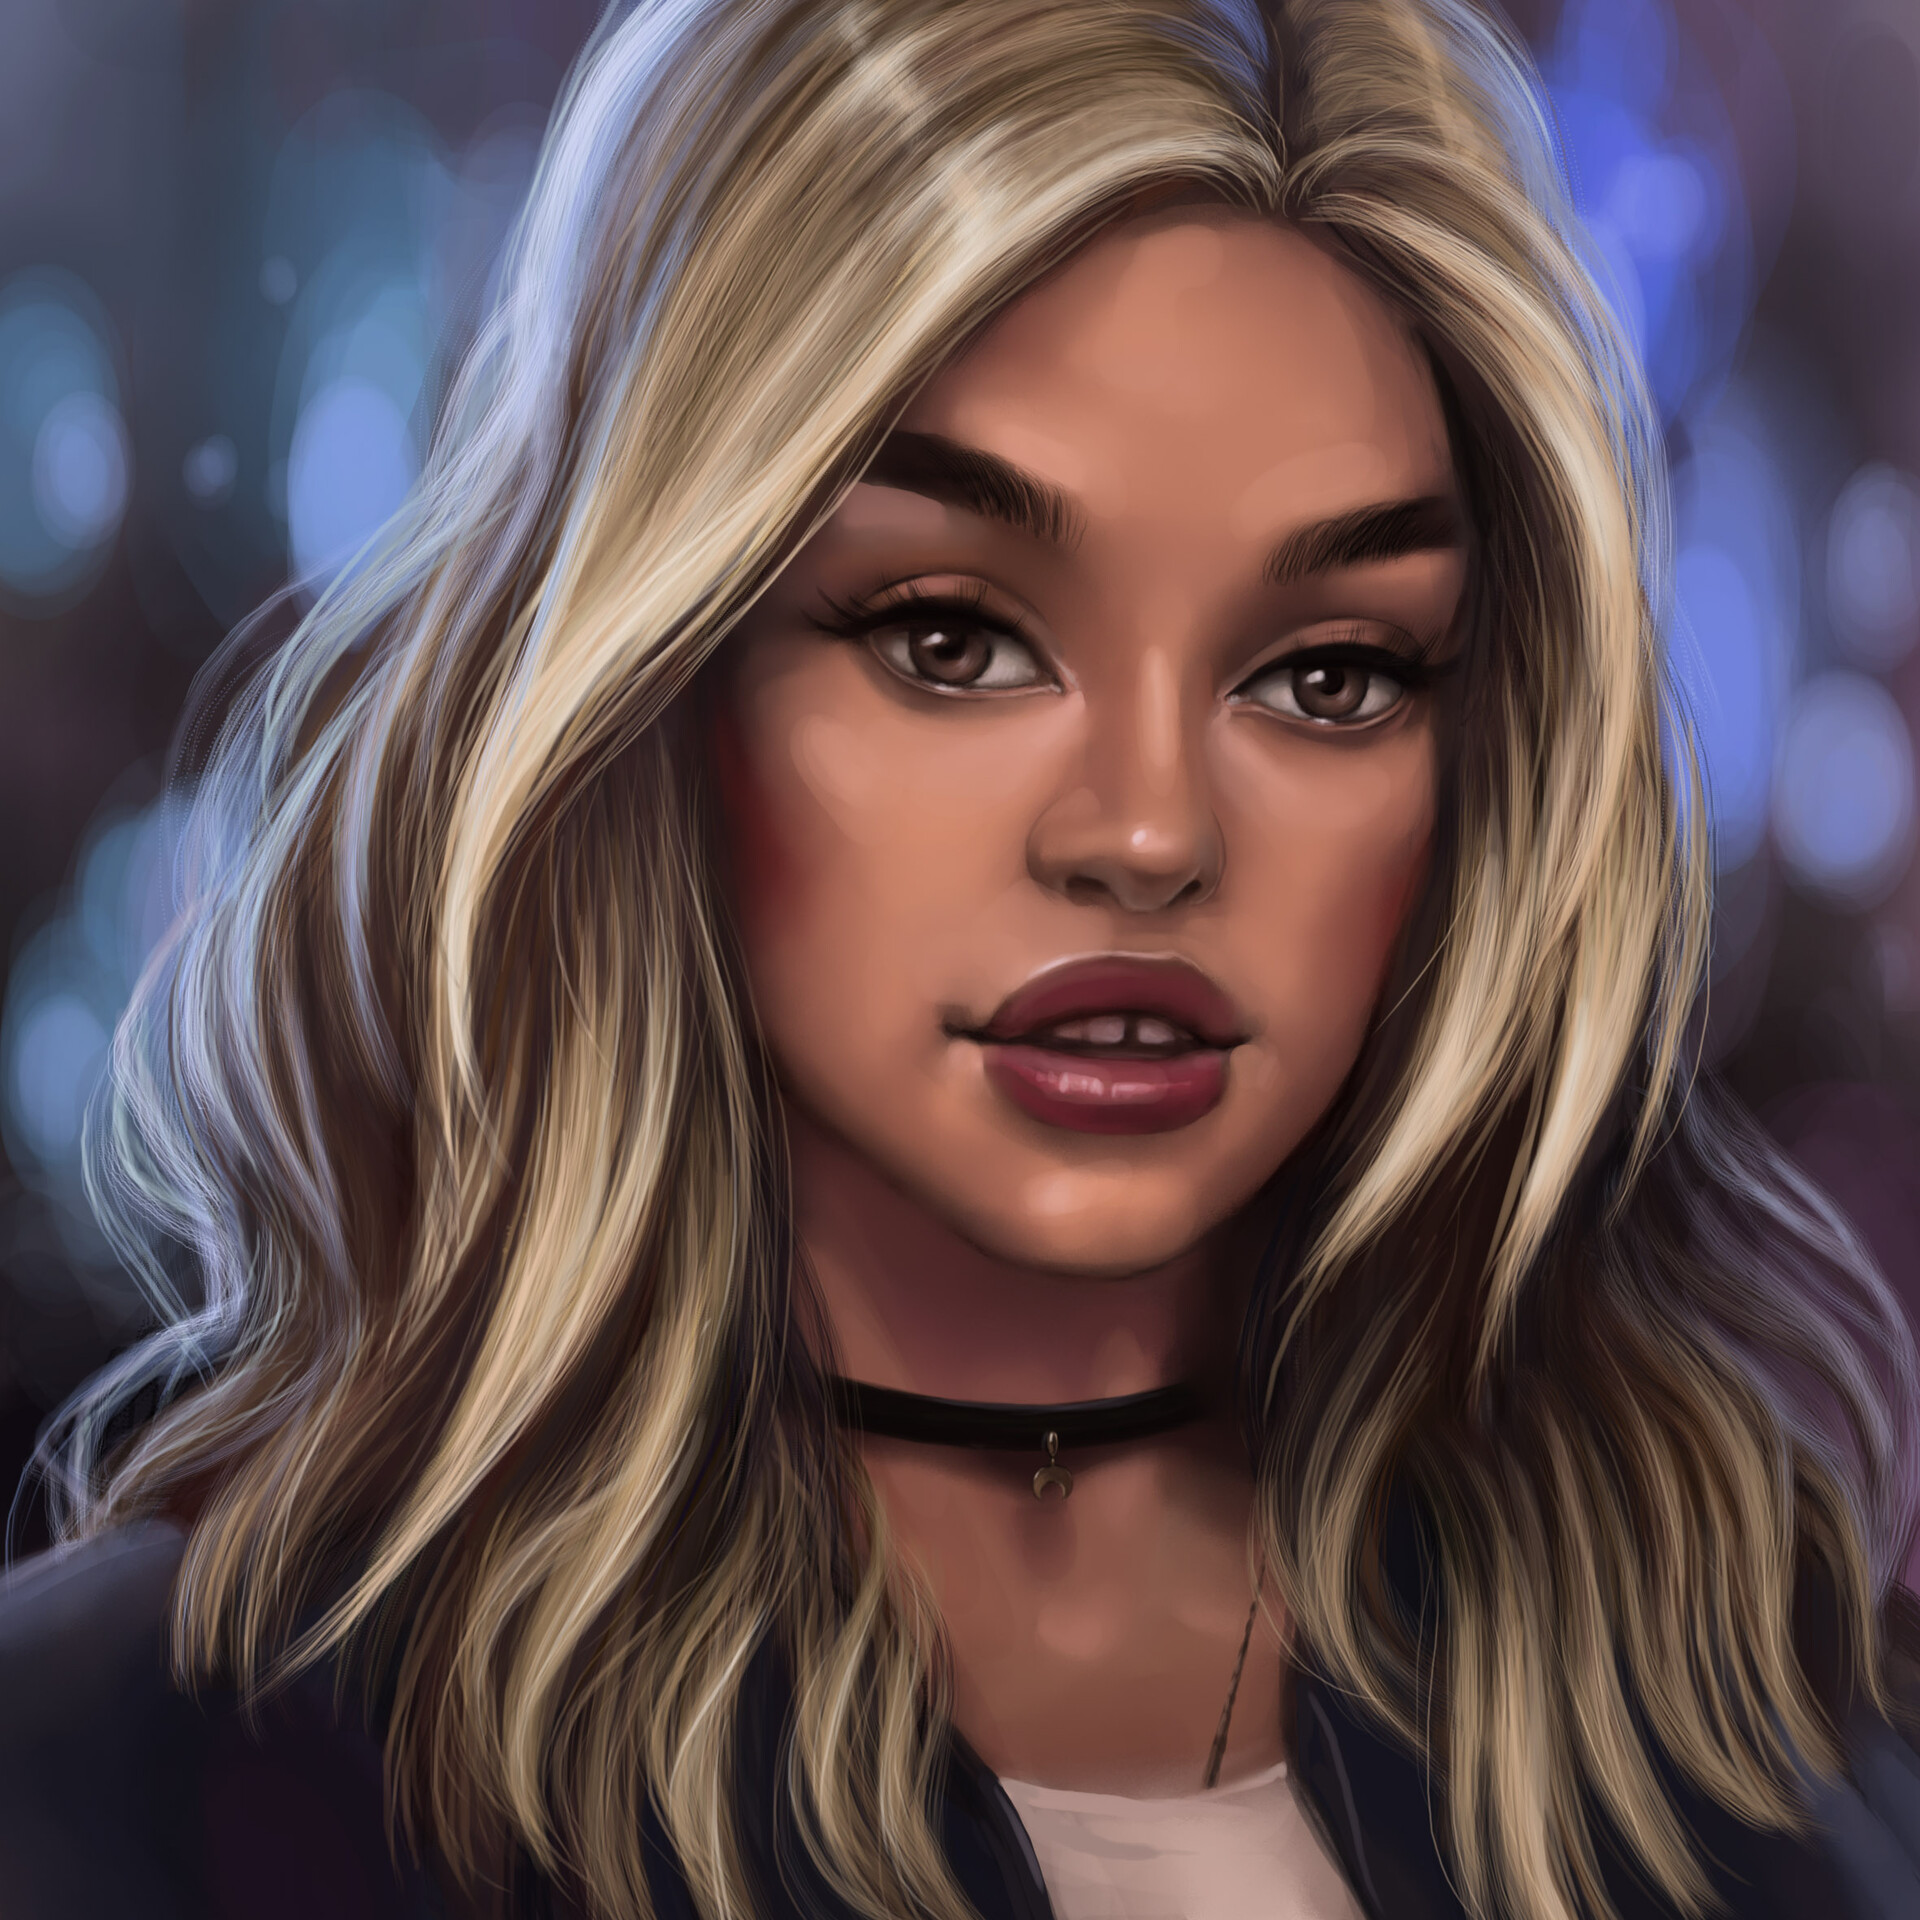 ArtStation - Girl portret